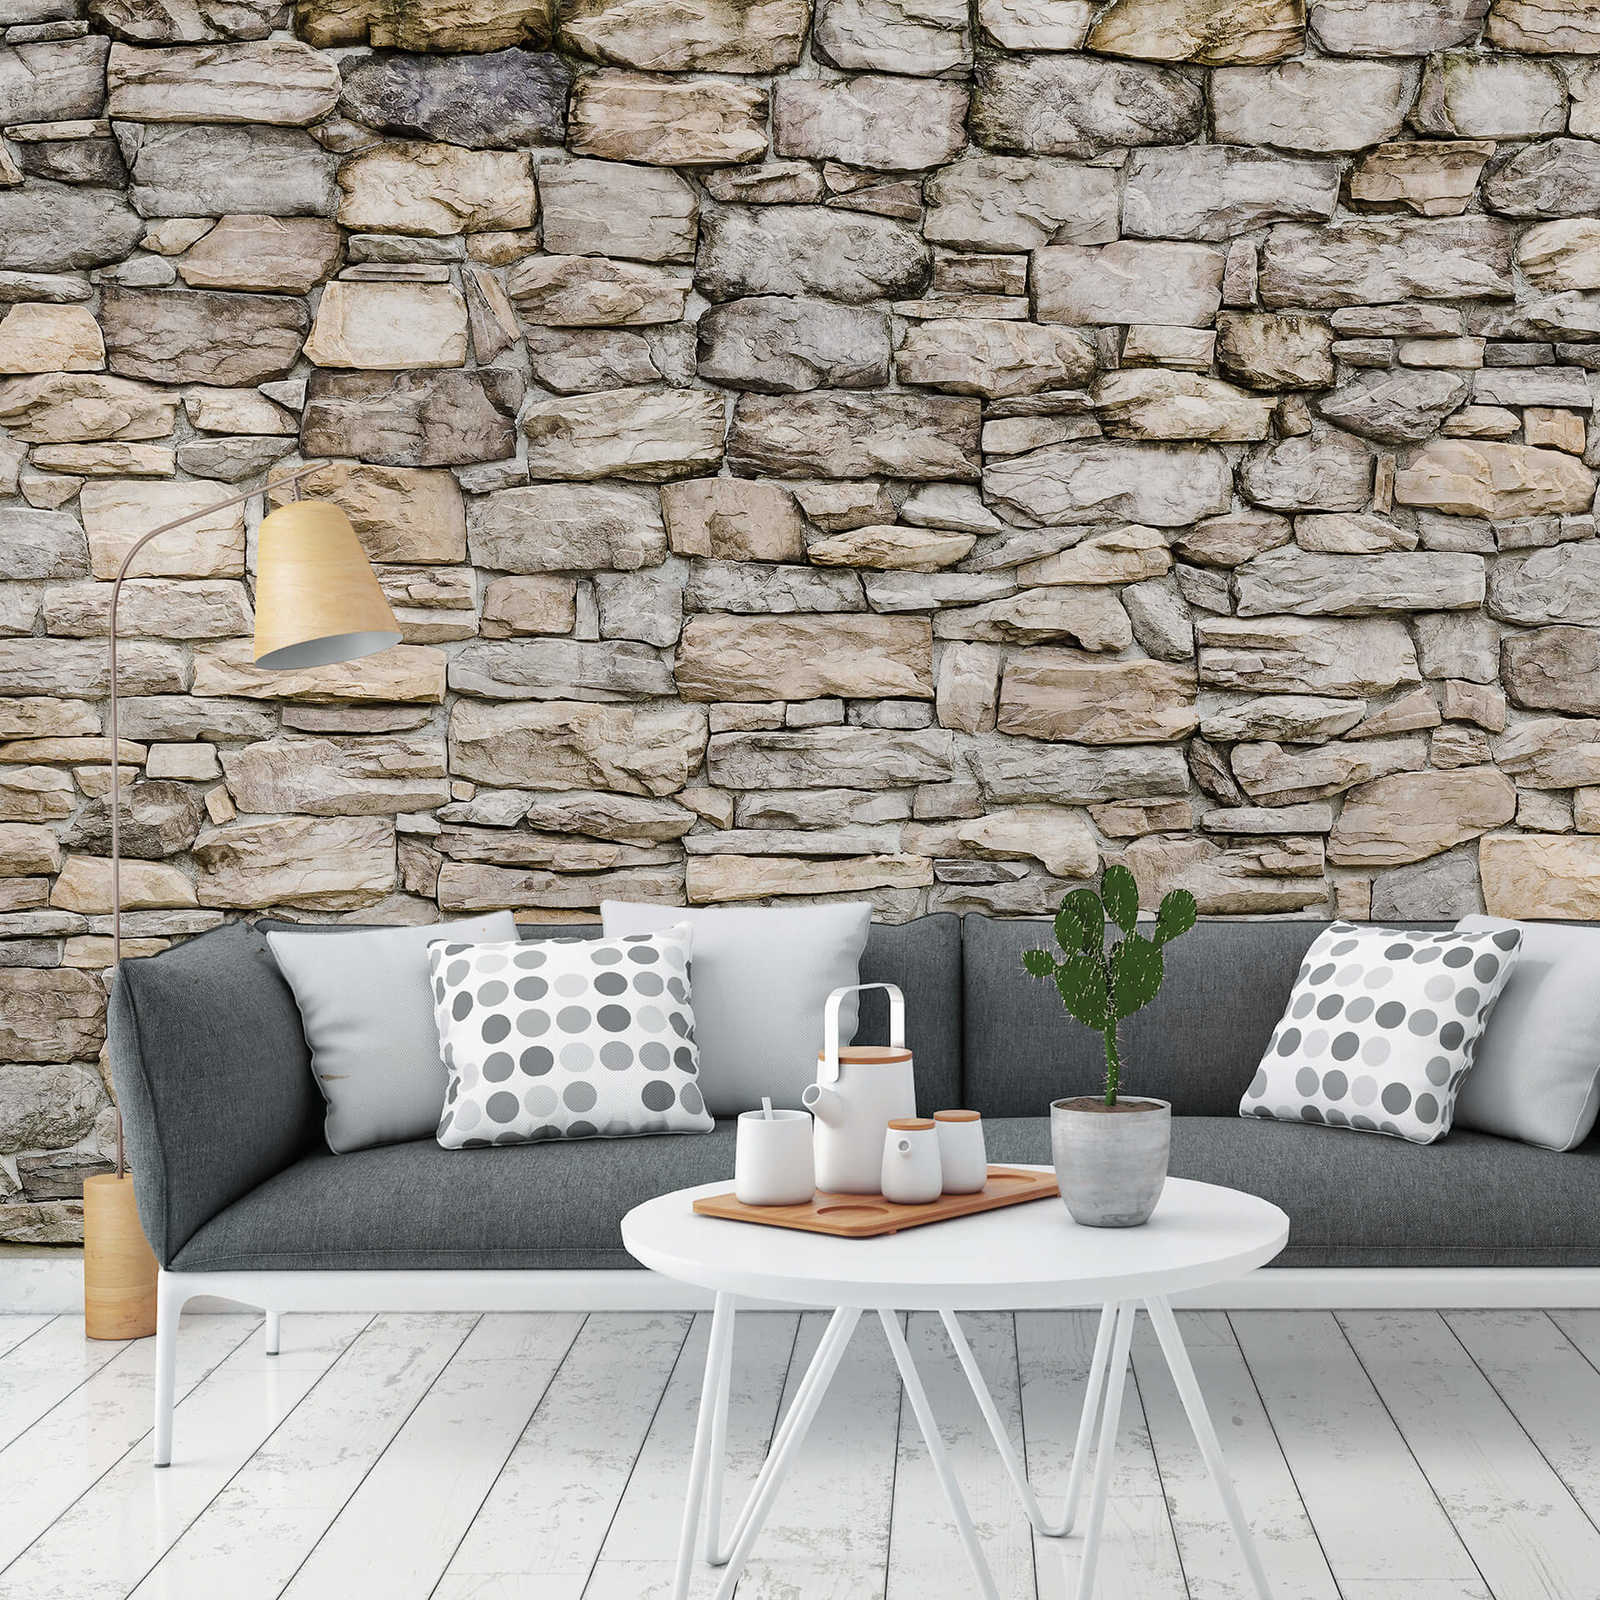             Papier peint mur de pierre pierre naturelle claire - gris
        